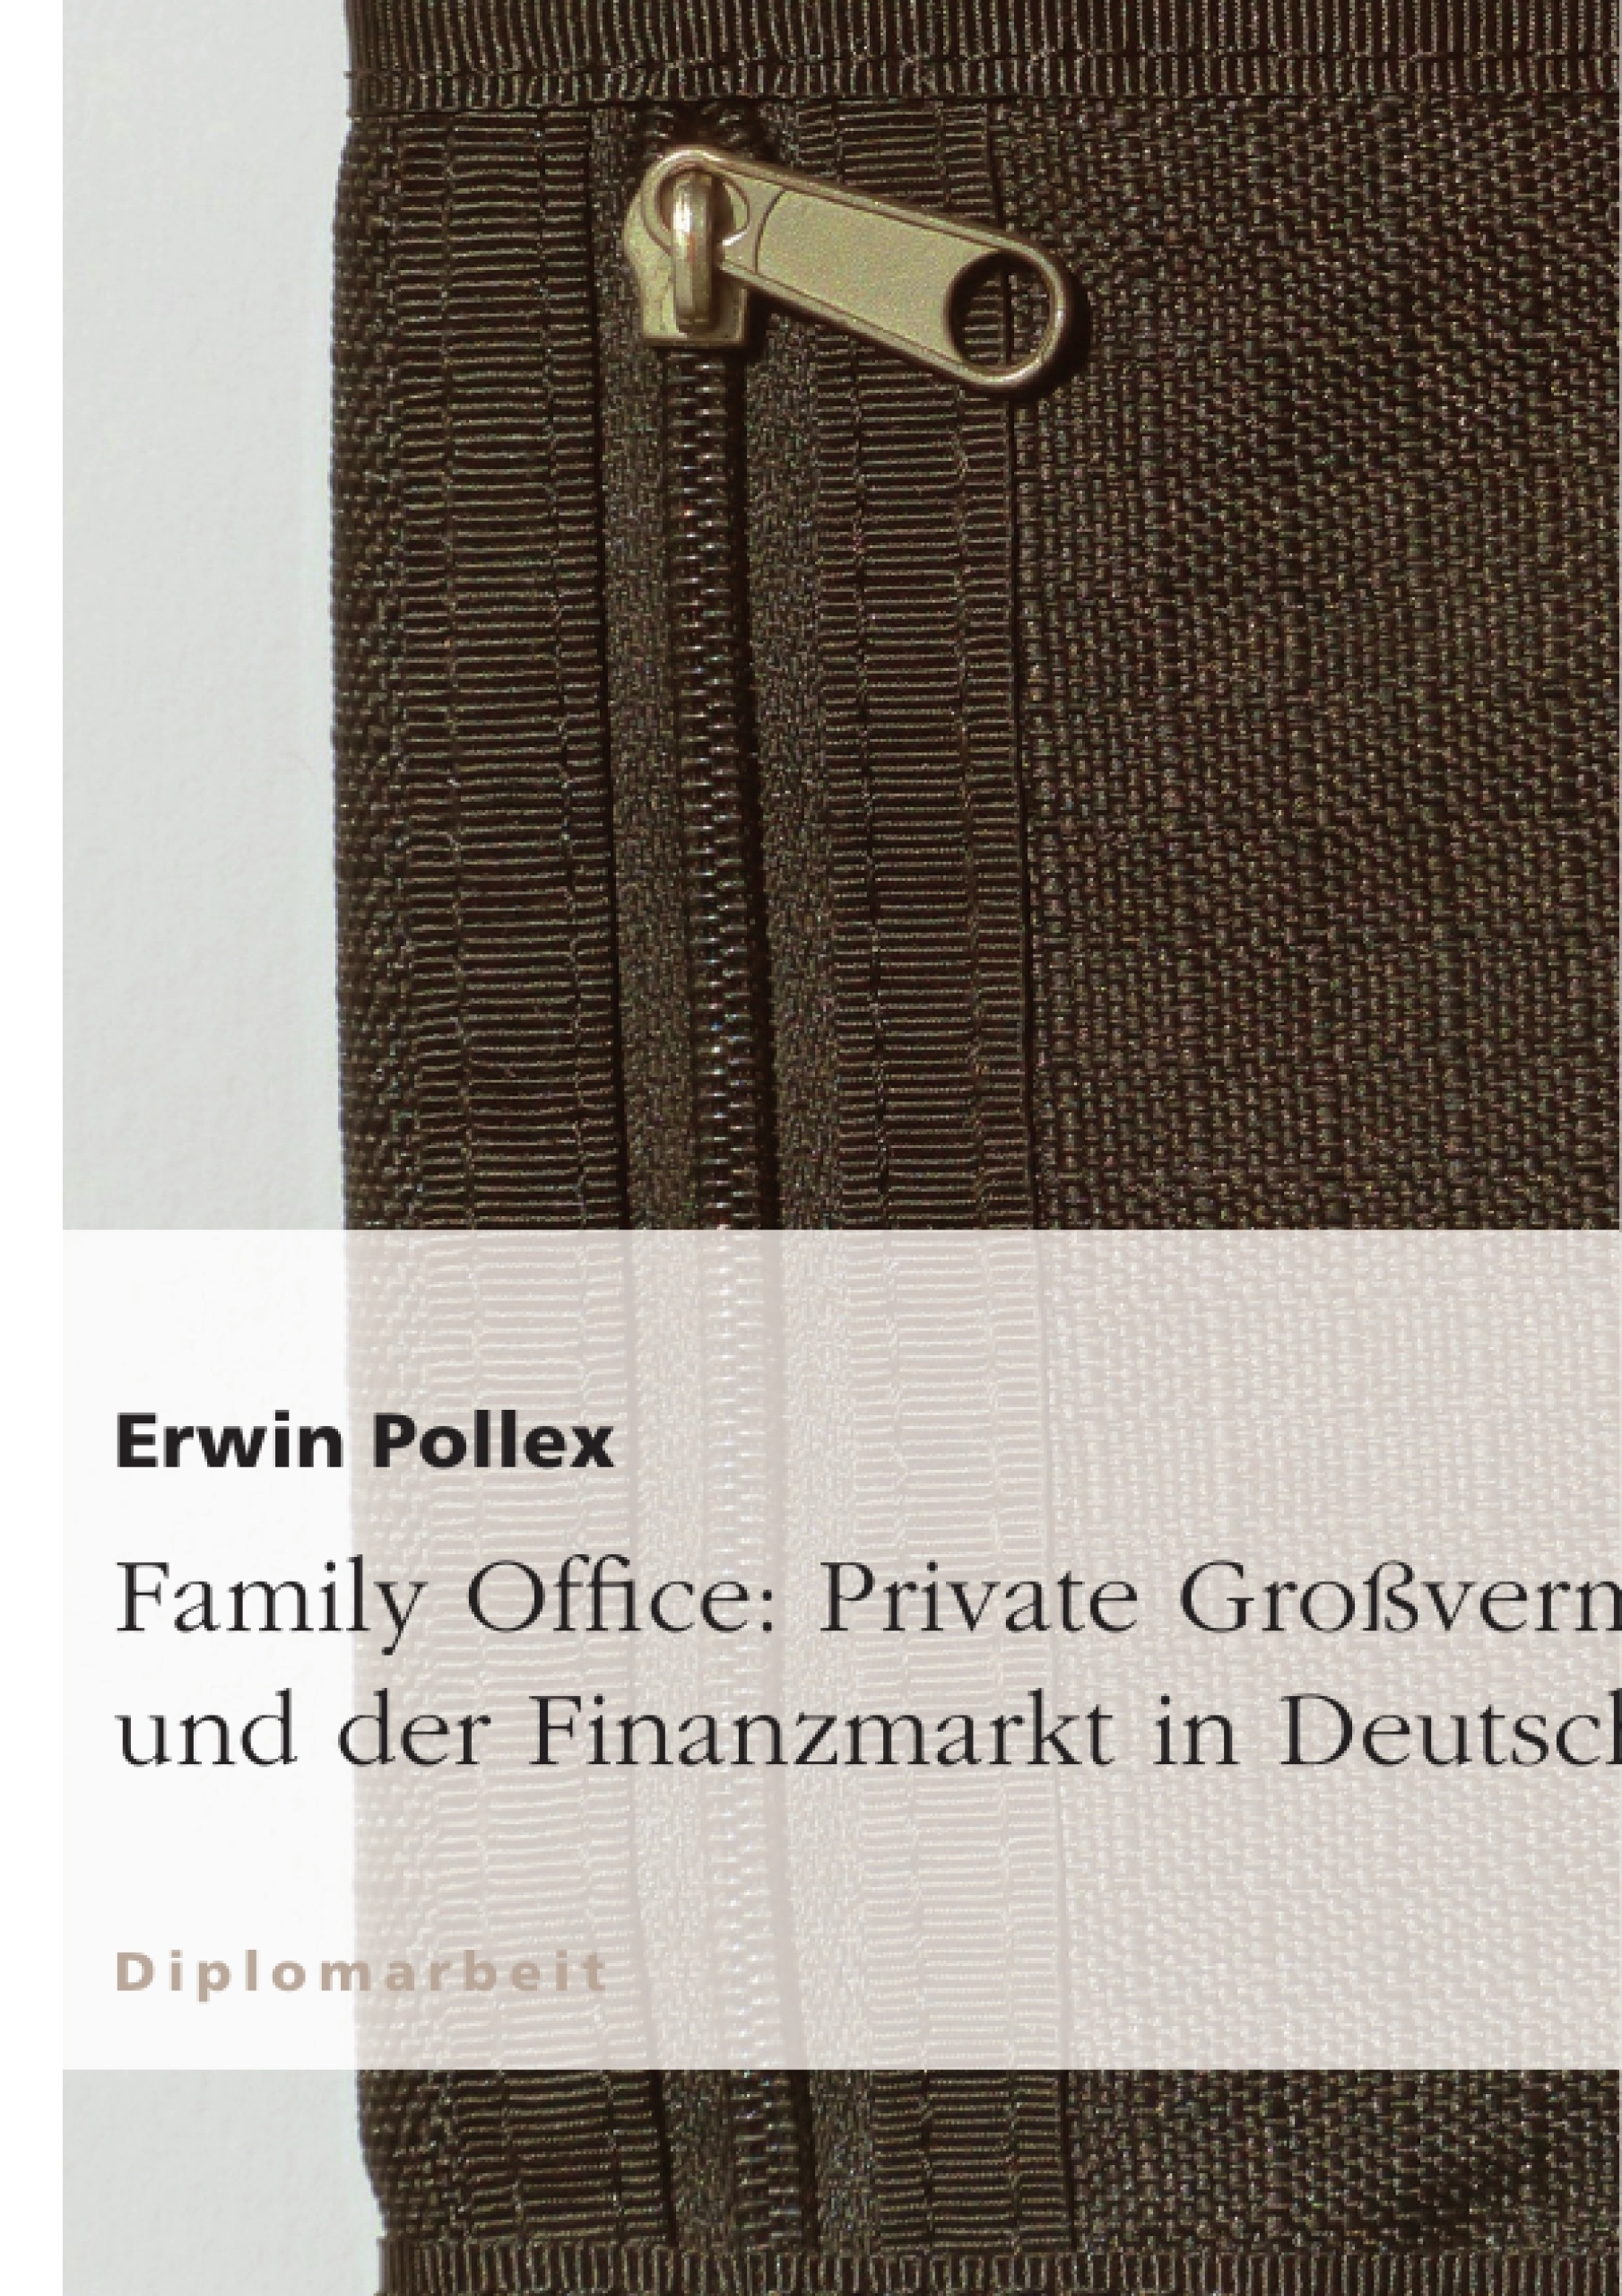 Título: Family Office: Private Großvermögen und der Finanzmarkt in Deutschland